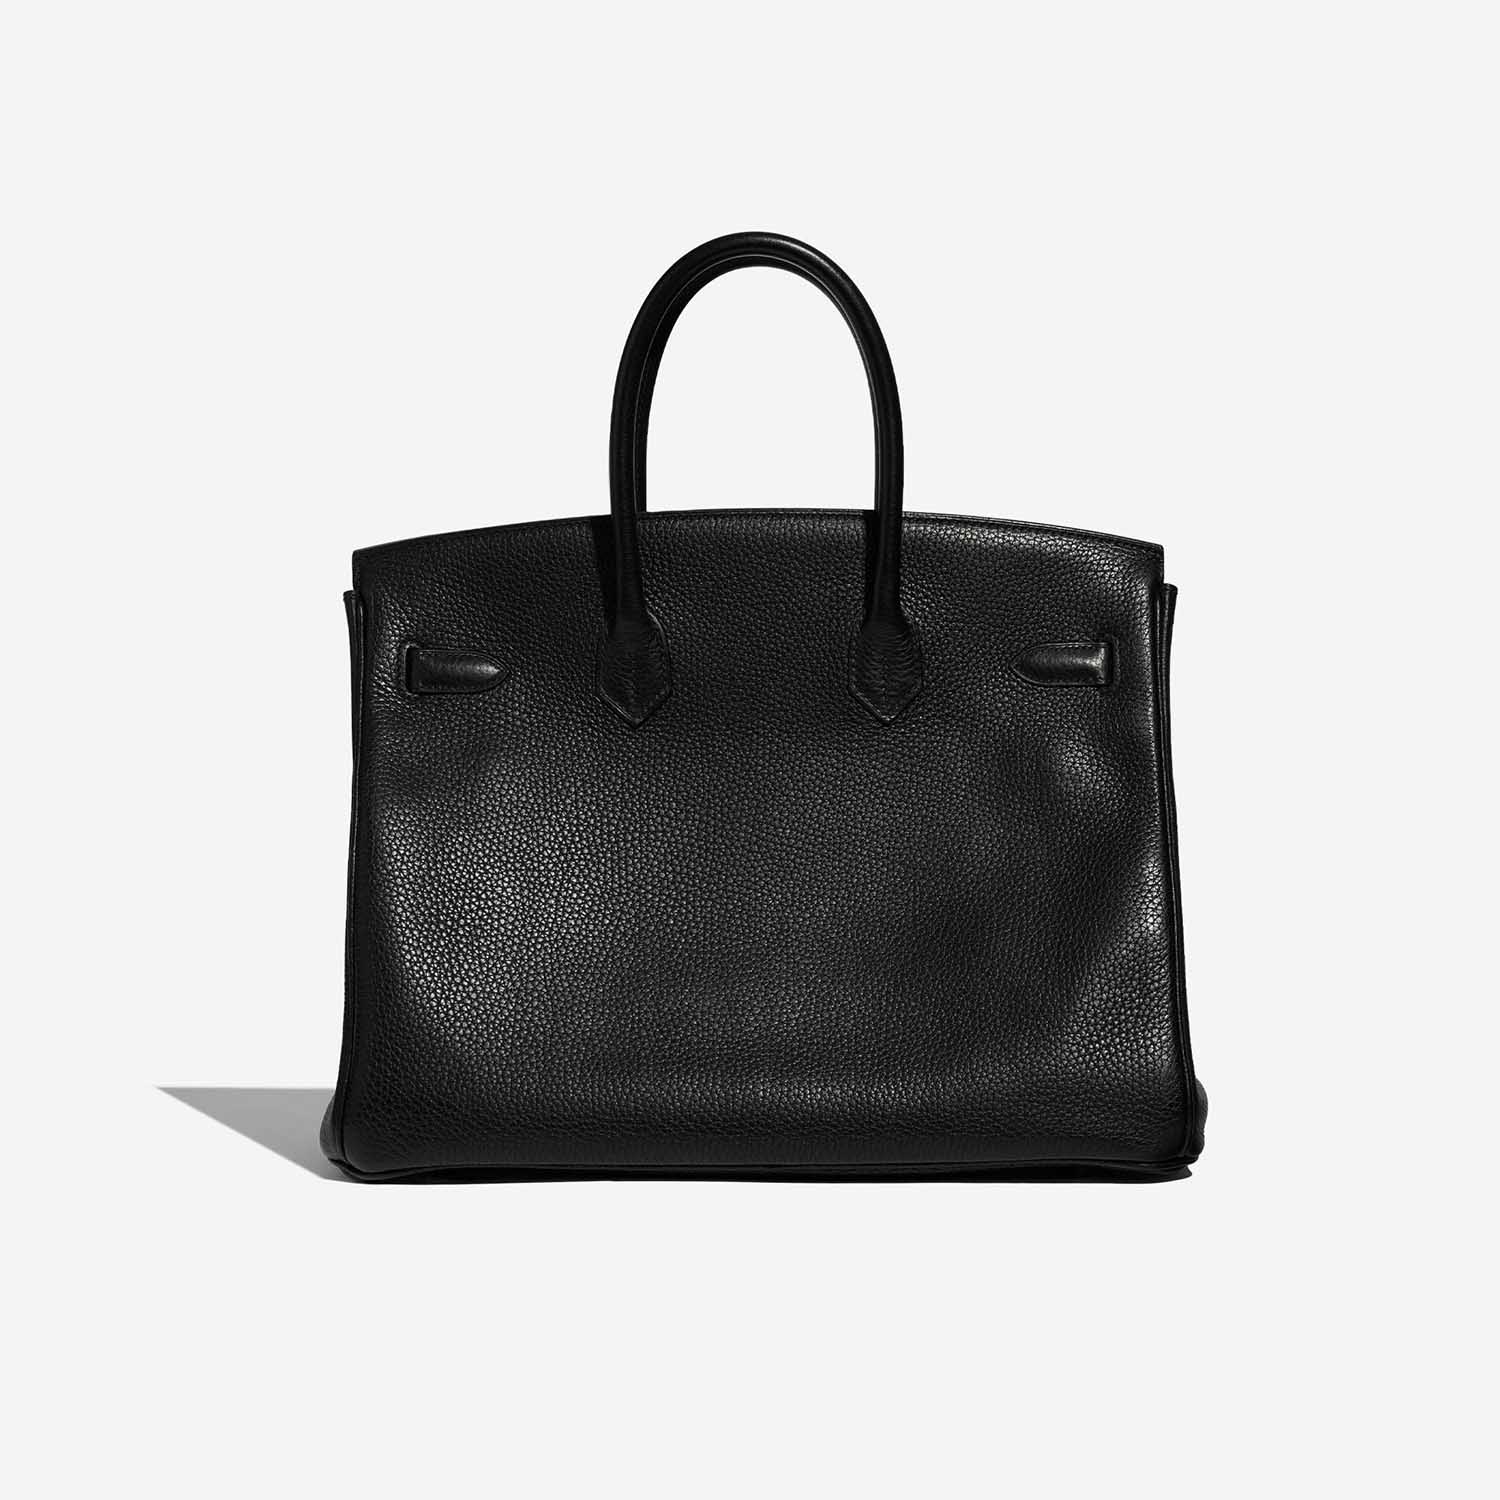 Sac Hermès d'occasion Birkin 35 Clémence Noir Noir Dos | Vendez votre sac de créateur sur Saclab.com